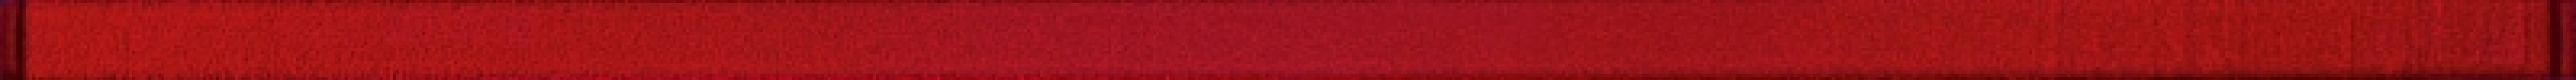 Бордюр Avangarde Glass Red 2x60 OD352-007